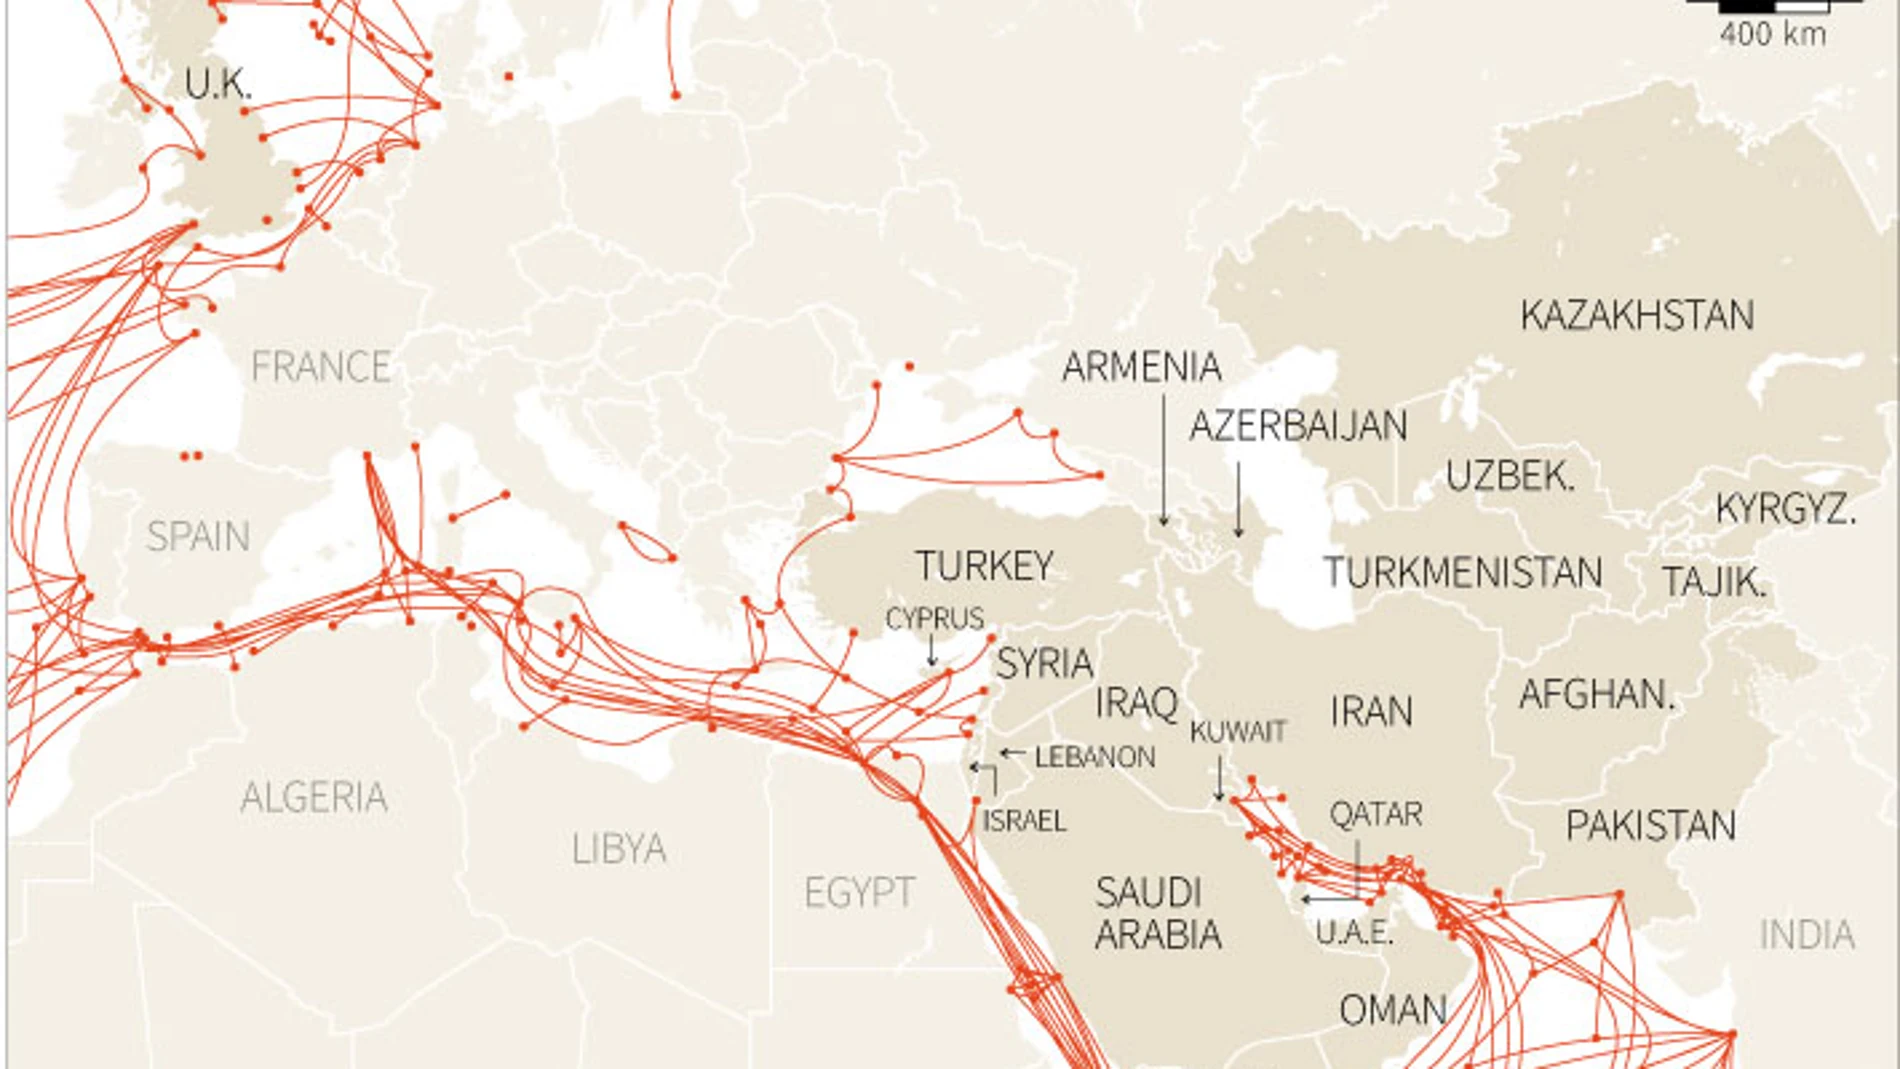 Un ejemplo de cables submarinos, en este caso los que comunican Europa con Oriente Medio